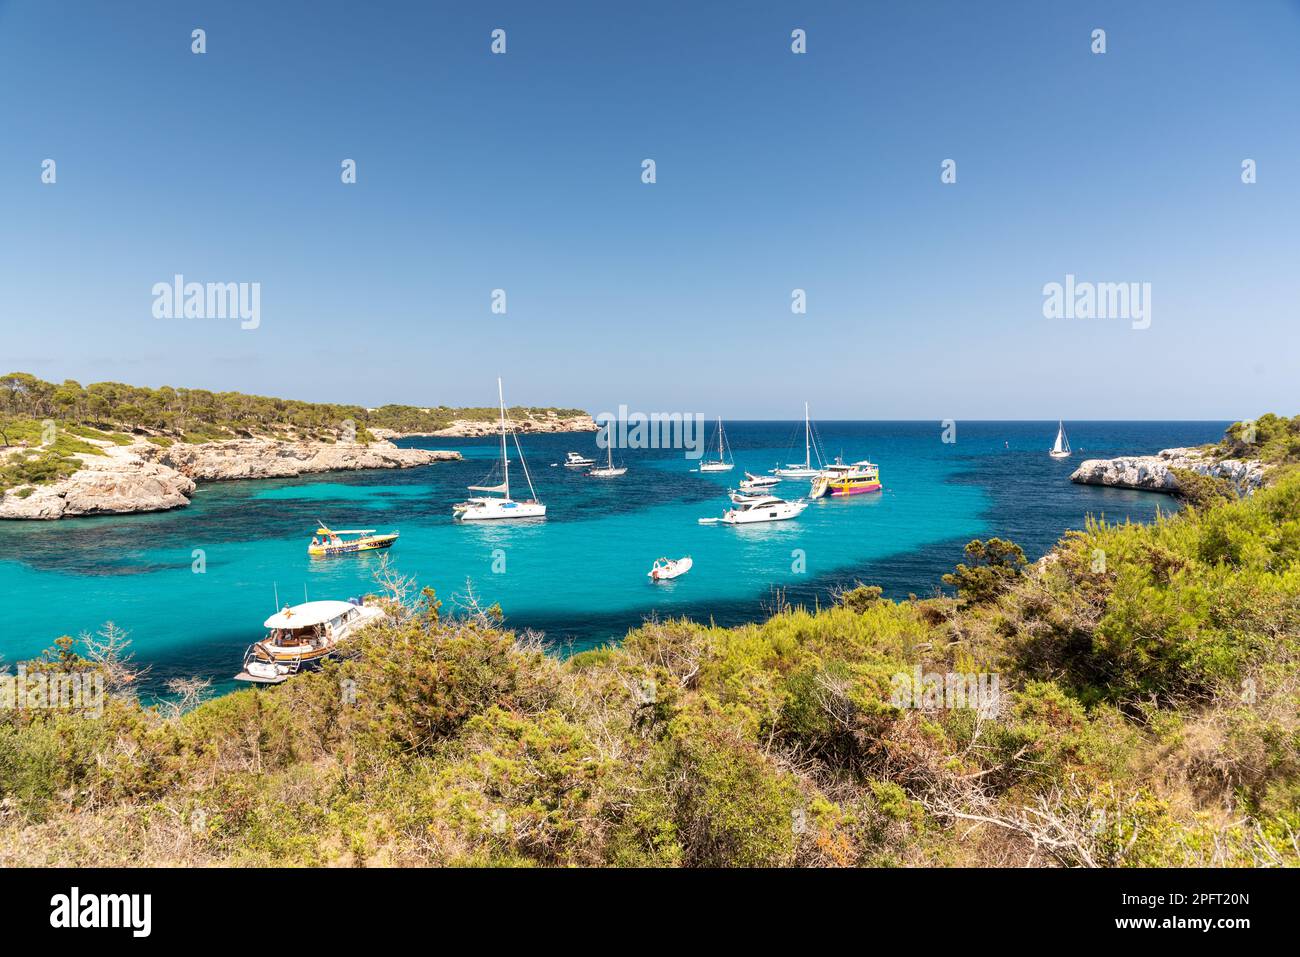 Le splendide acque turchesi e la soffice sabbia bianca della spiaggia di Cala Agulla a Maiorca, Spagna, attirano visitatori da tutto il mondo a crogiolarsi nella sua bellezza Foto Stock